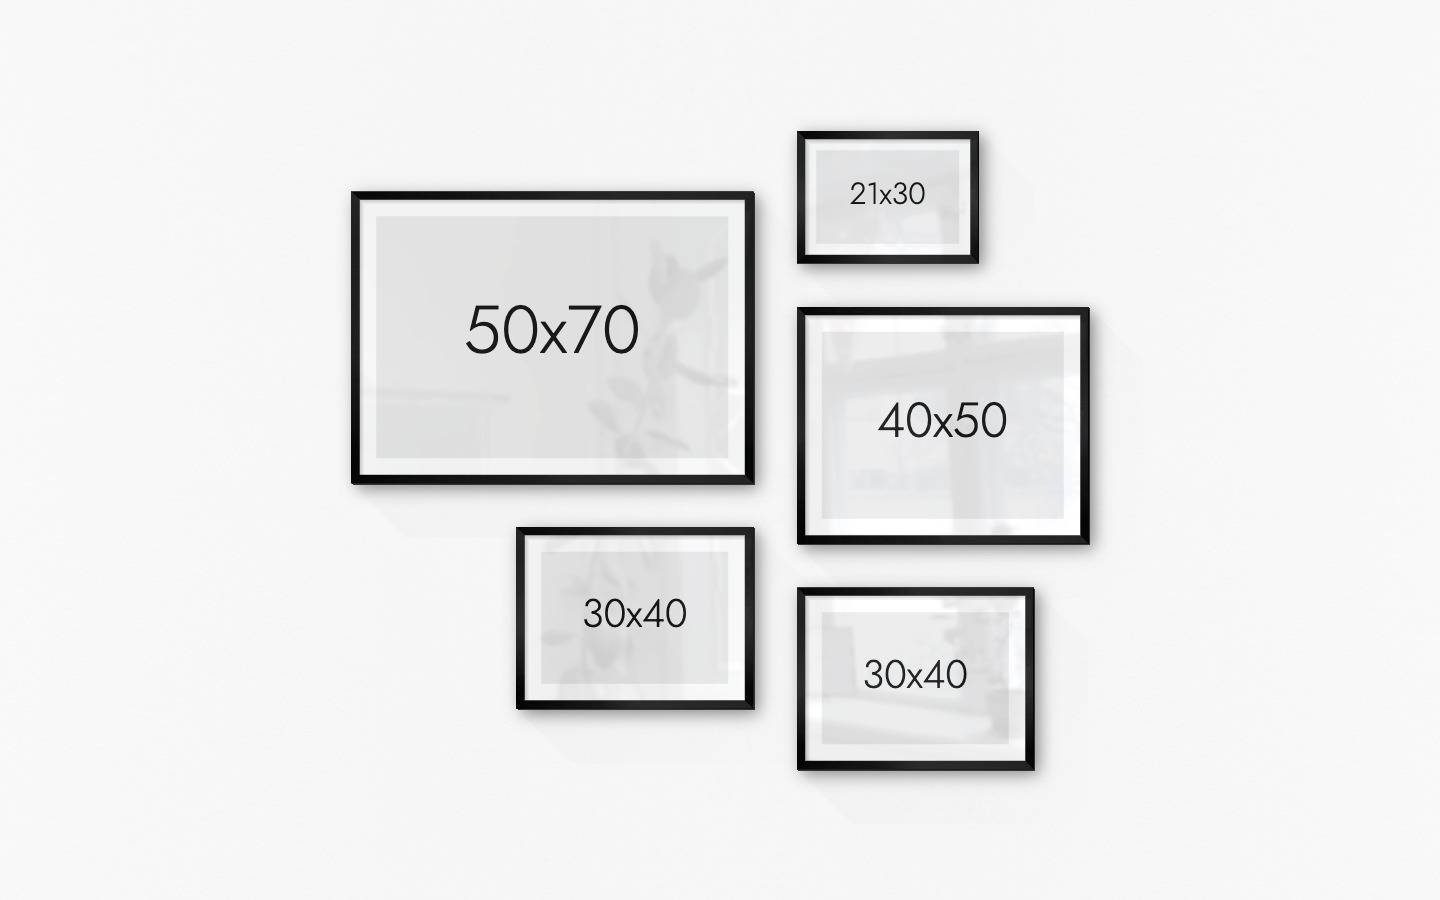 Tavelvägg med ramar i svart i storlekar 50x70, 30x40, 21x30 och 40x50